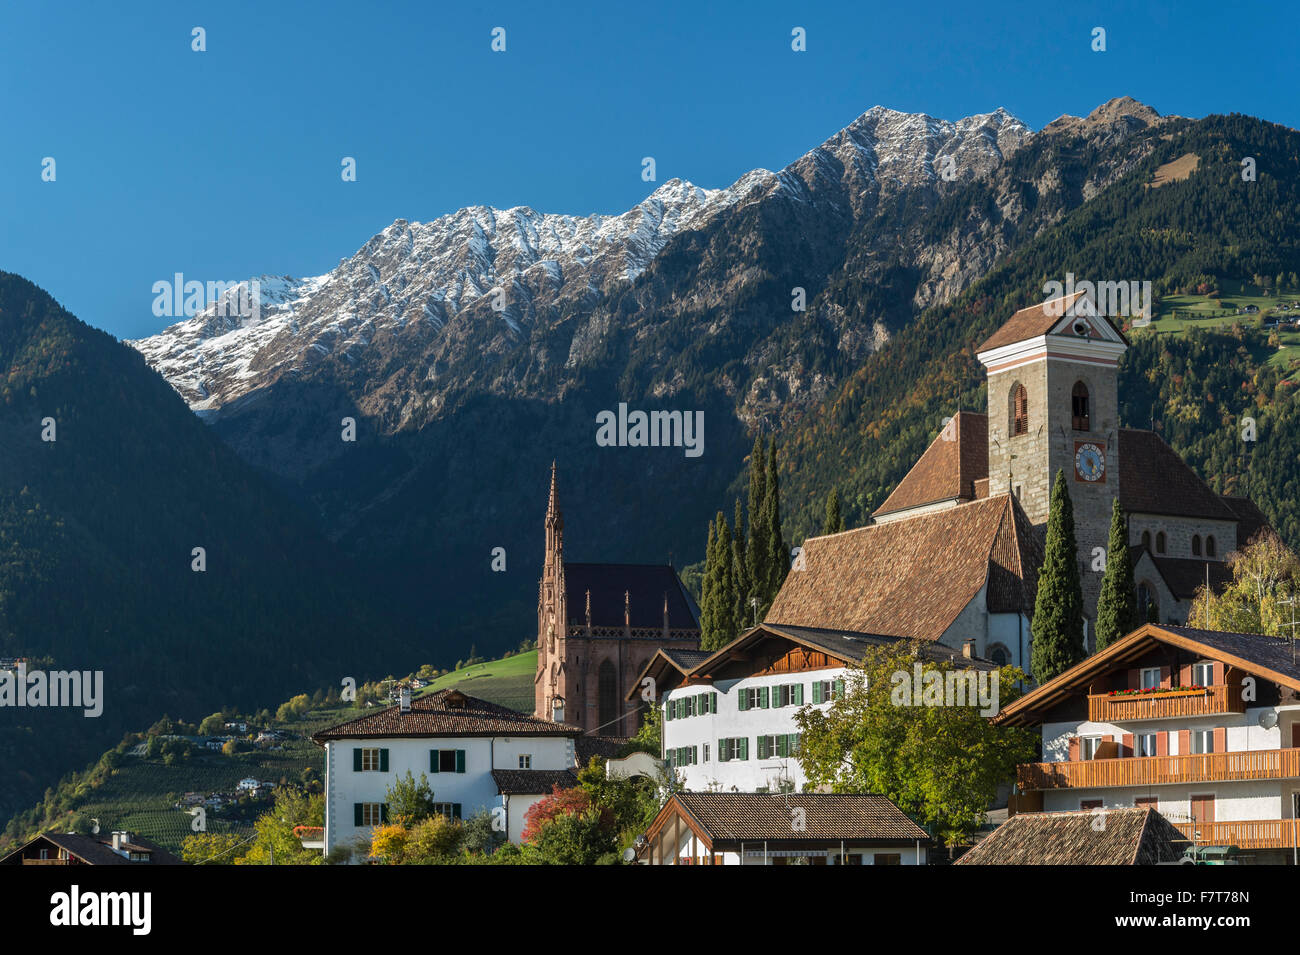 Village de Montagne de la Scena près de Merano, province du Trentin, Province du Tyrol du Sud, Italie Banque D'Images